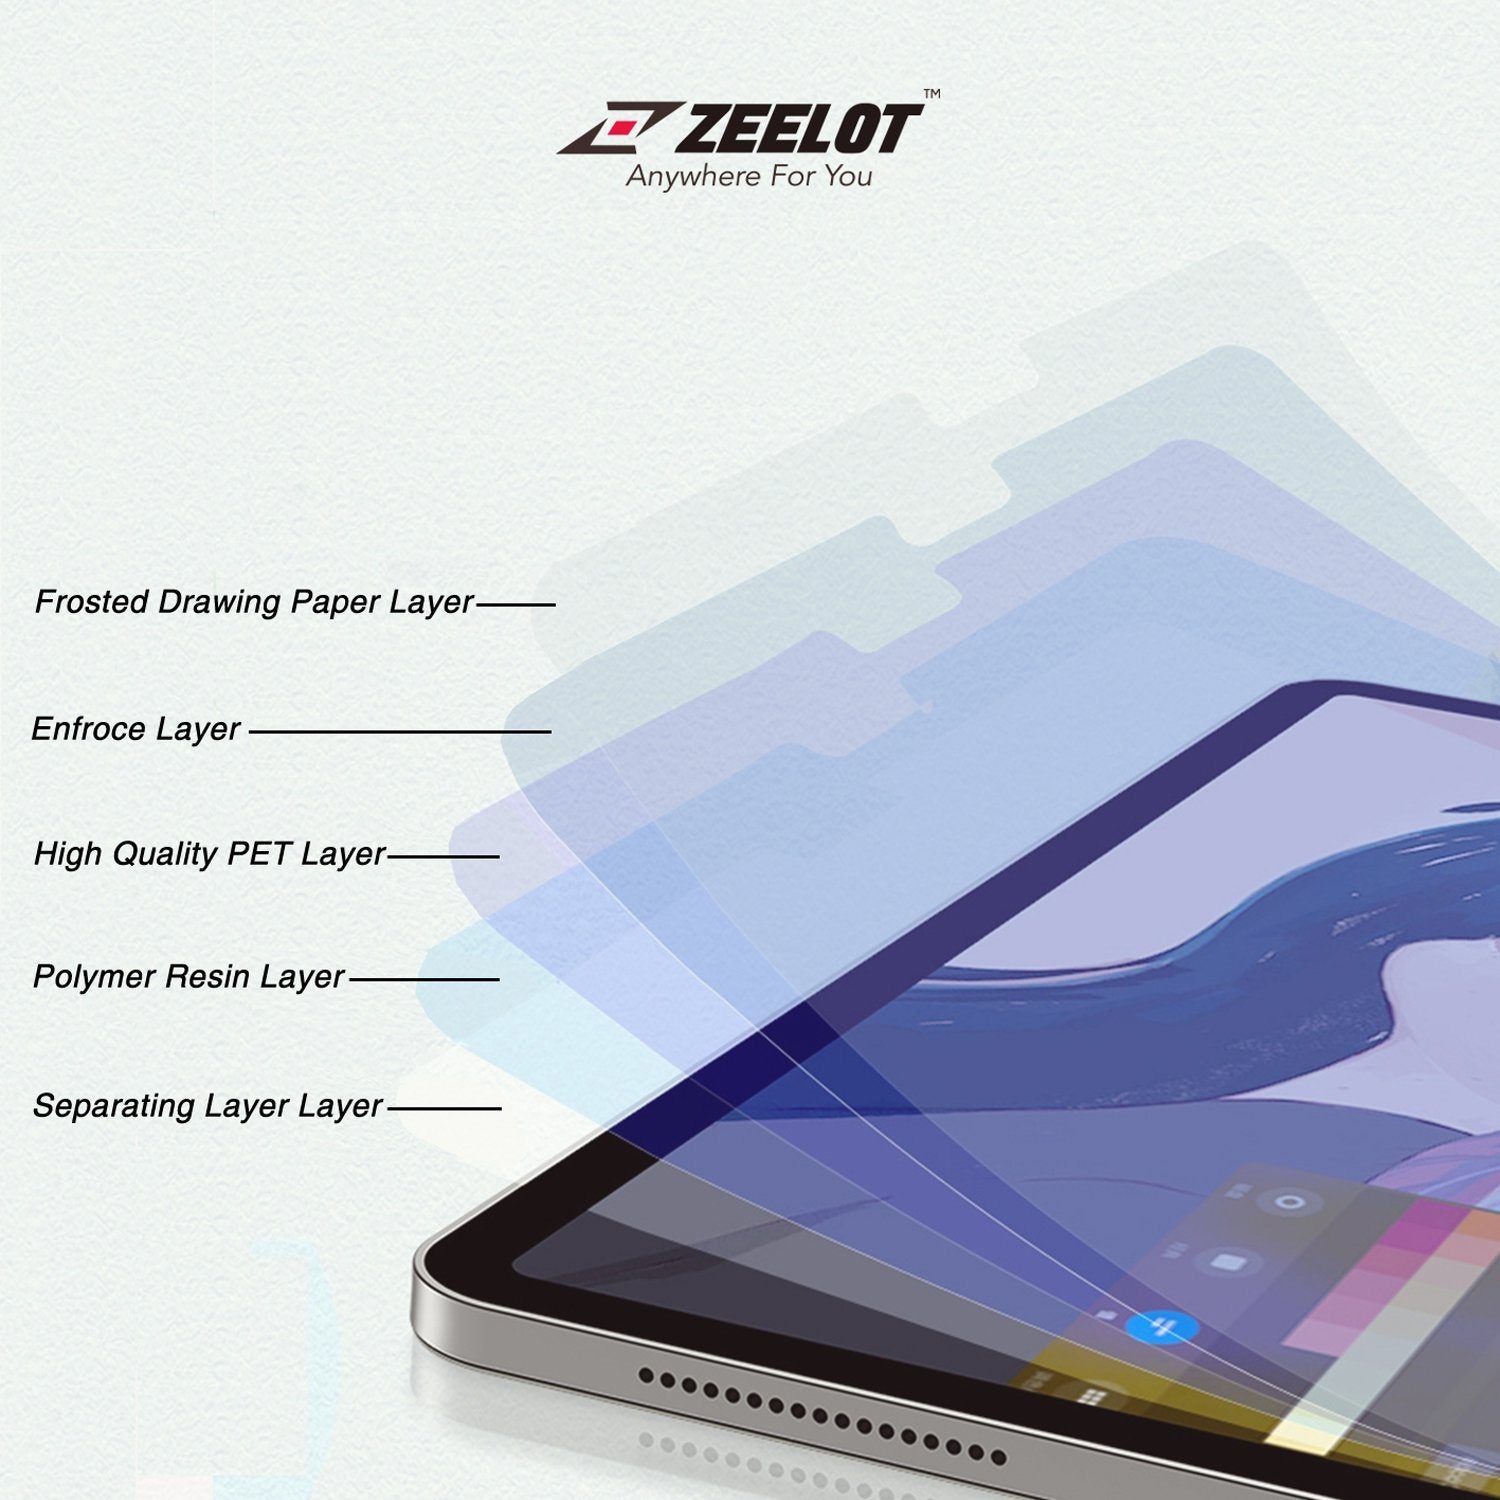 ZEELOT Paper Like Screen Protector for iPad Mini 5 7.9"(2019/2015) Default Zeelot 